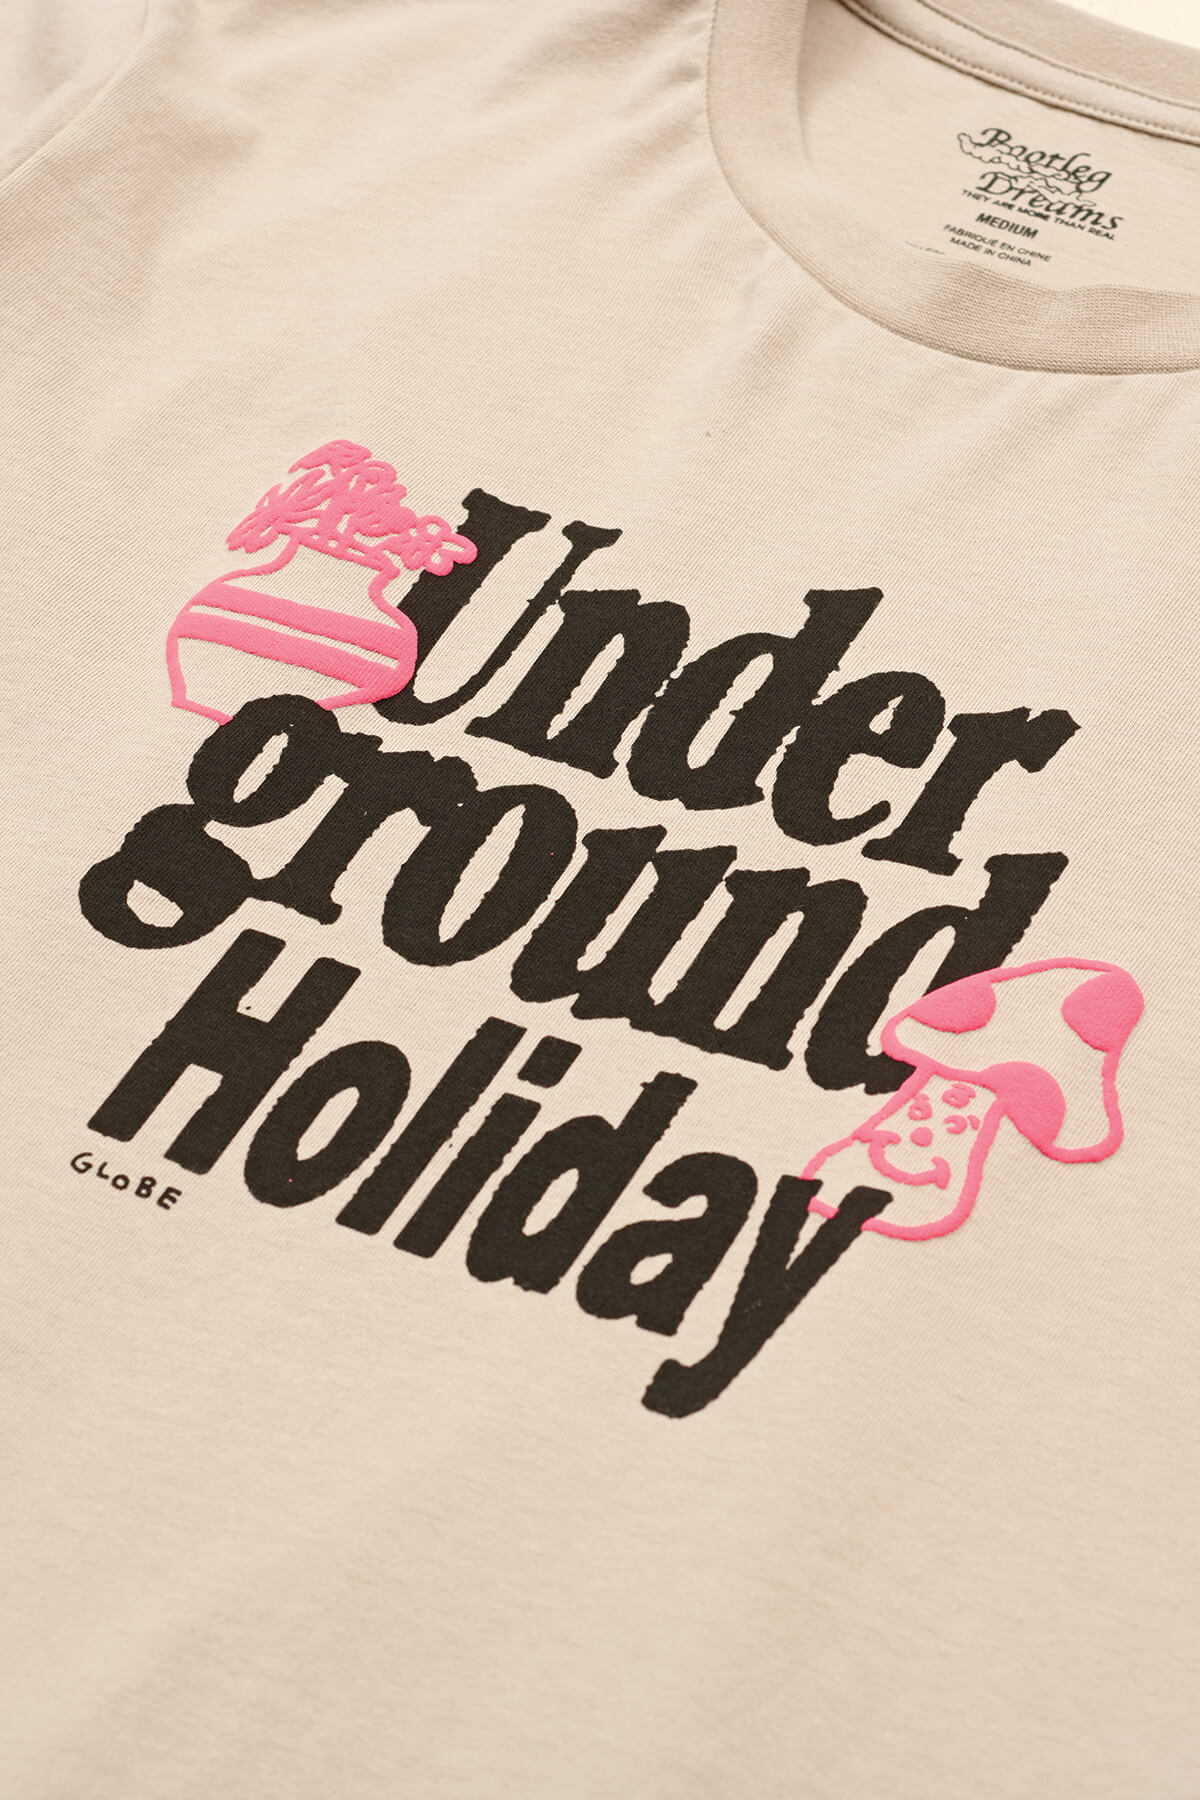 tee-shirt underground holiday ss dune